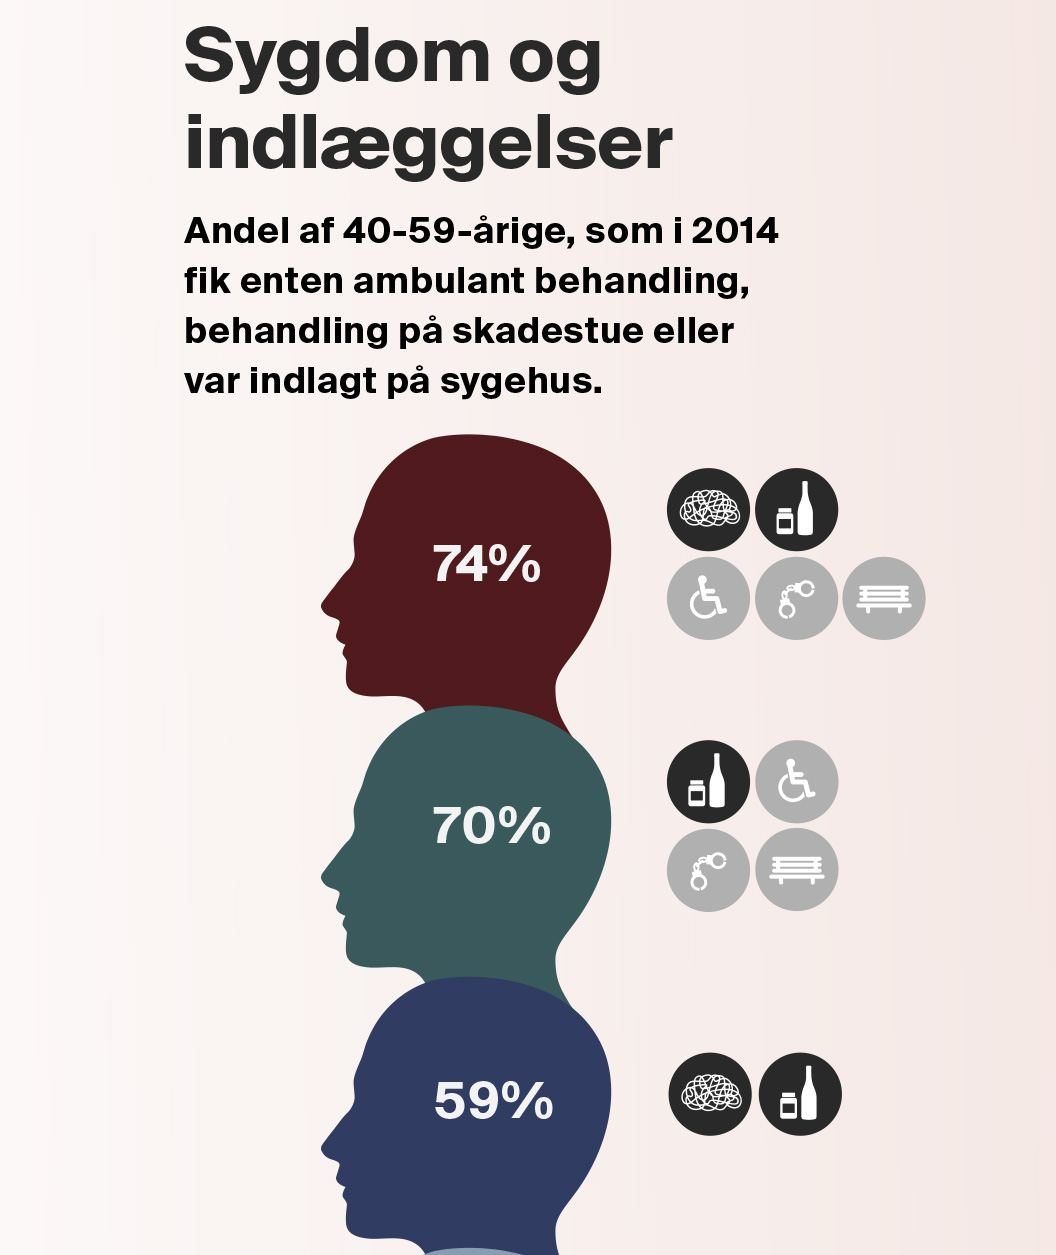 De mest udsatte danskere bruger sundhedsvæsenet mere end den øvrige befolkning. På dette område kan der derfor være en samfundsøkonomisk gevinst ved sociale indsatser. Udsnit af figur fra "Når udsatte borgere møder velfærdssystemet”, VIVE 2018